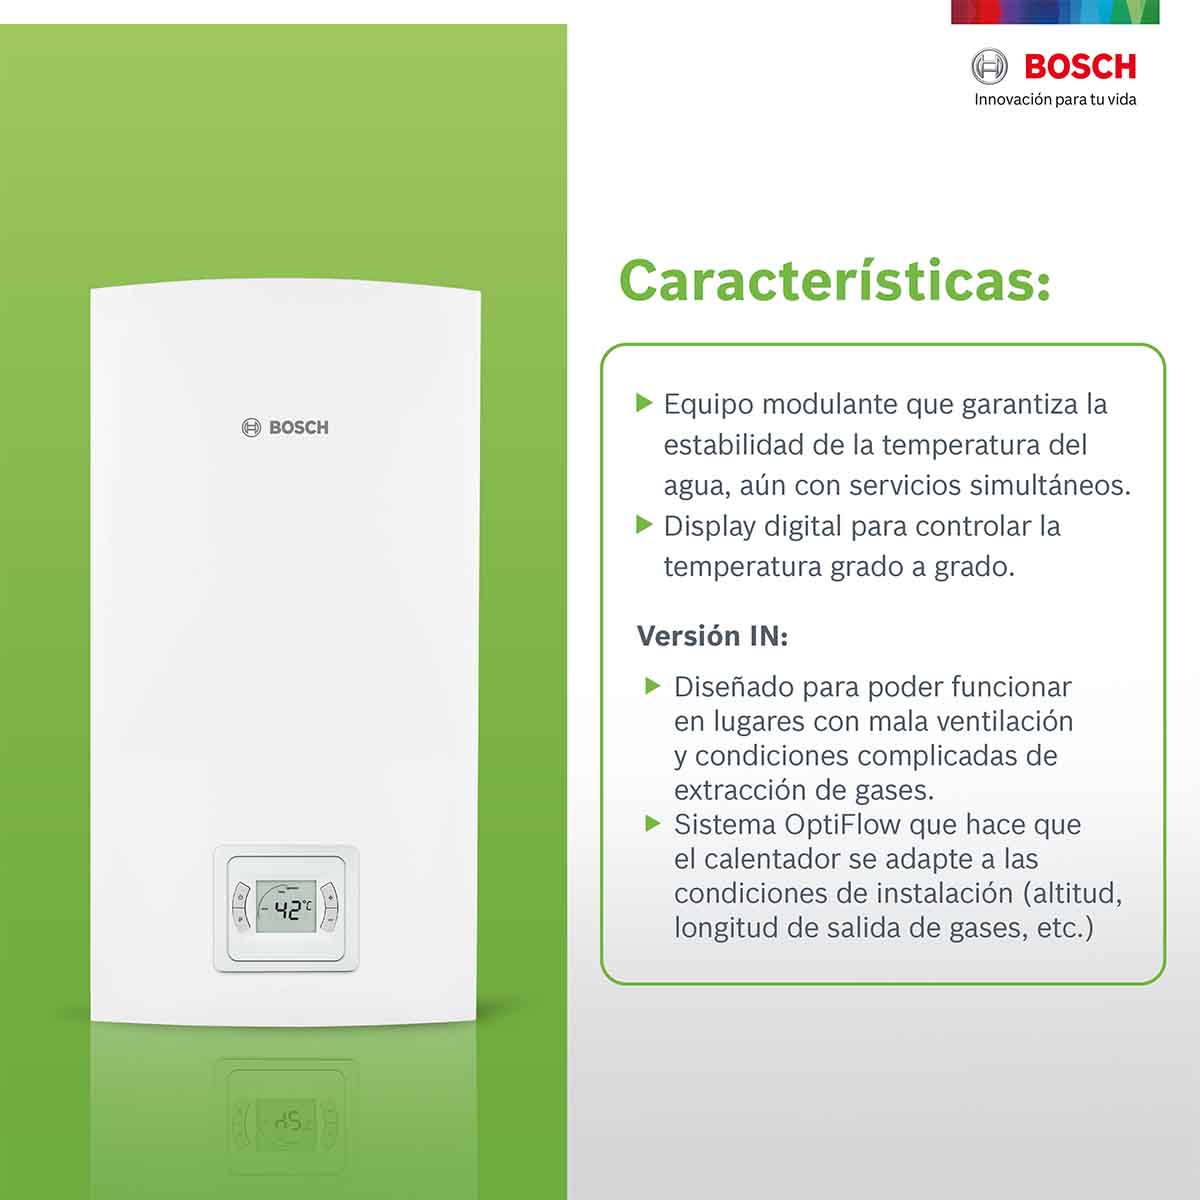 Calentador Paso 4 Servicios Compact In 20 Gas Natural Bosch